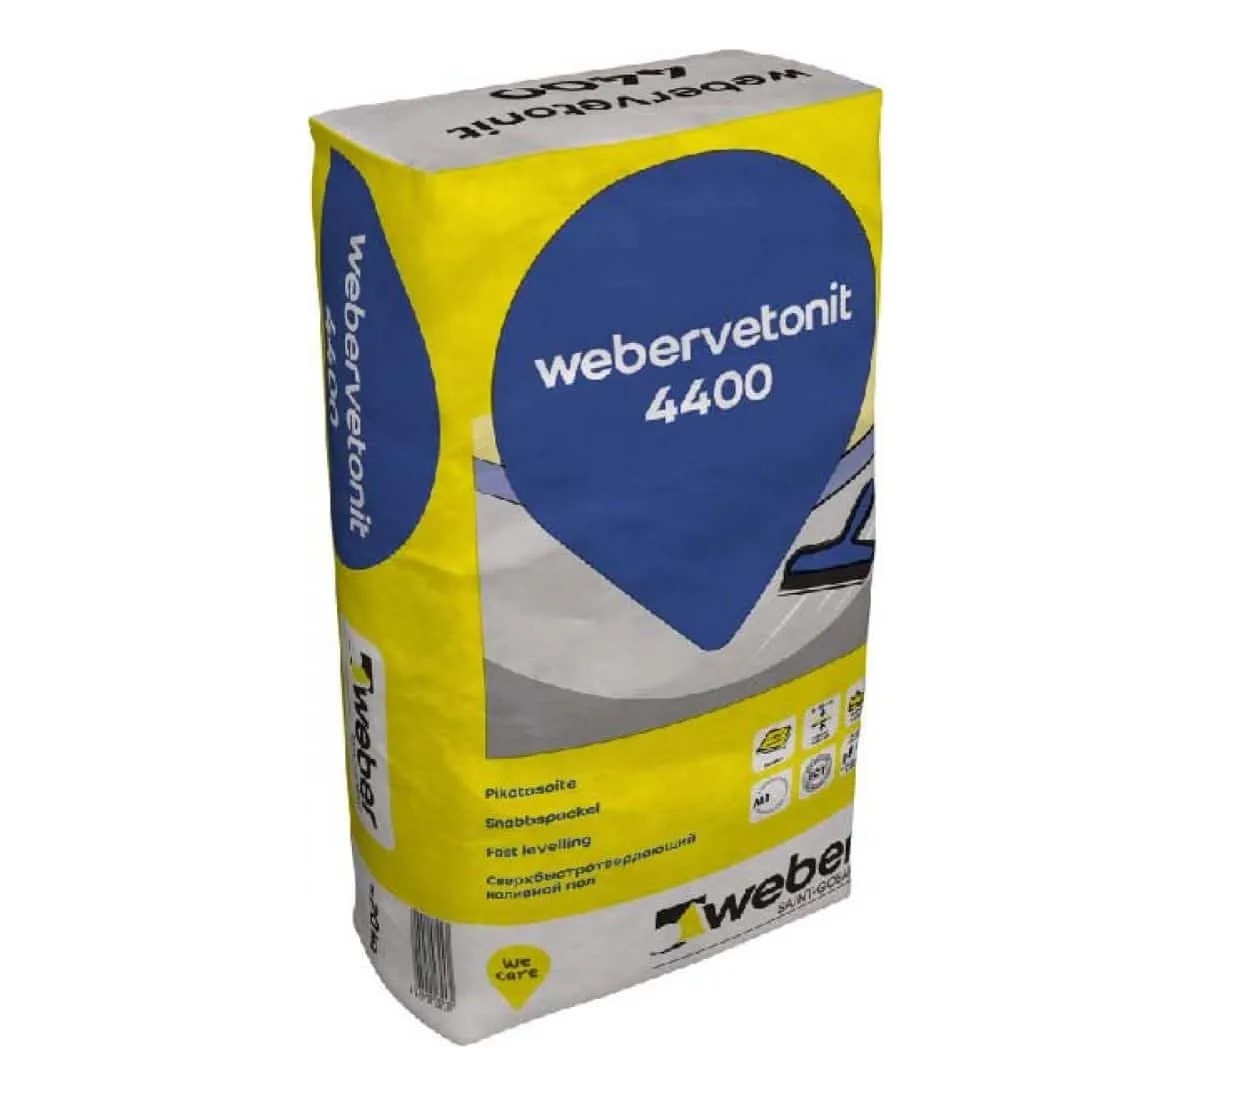     Weber Vetonit () 4400 20 